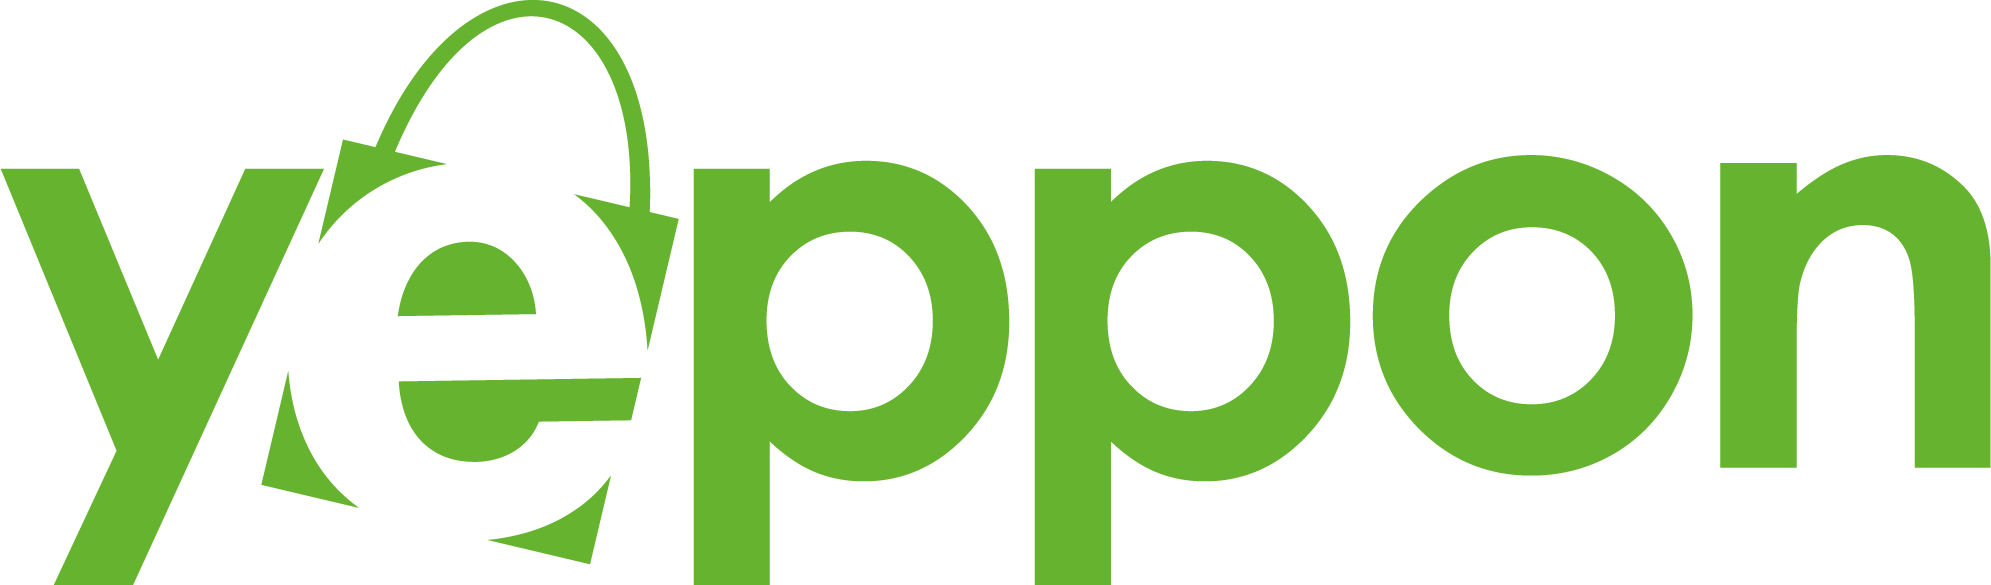 Logo Yeppon